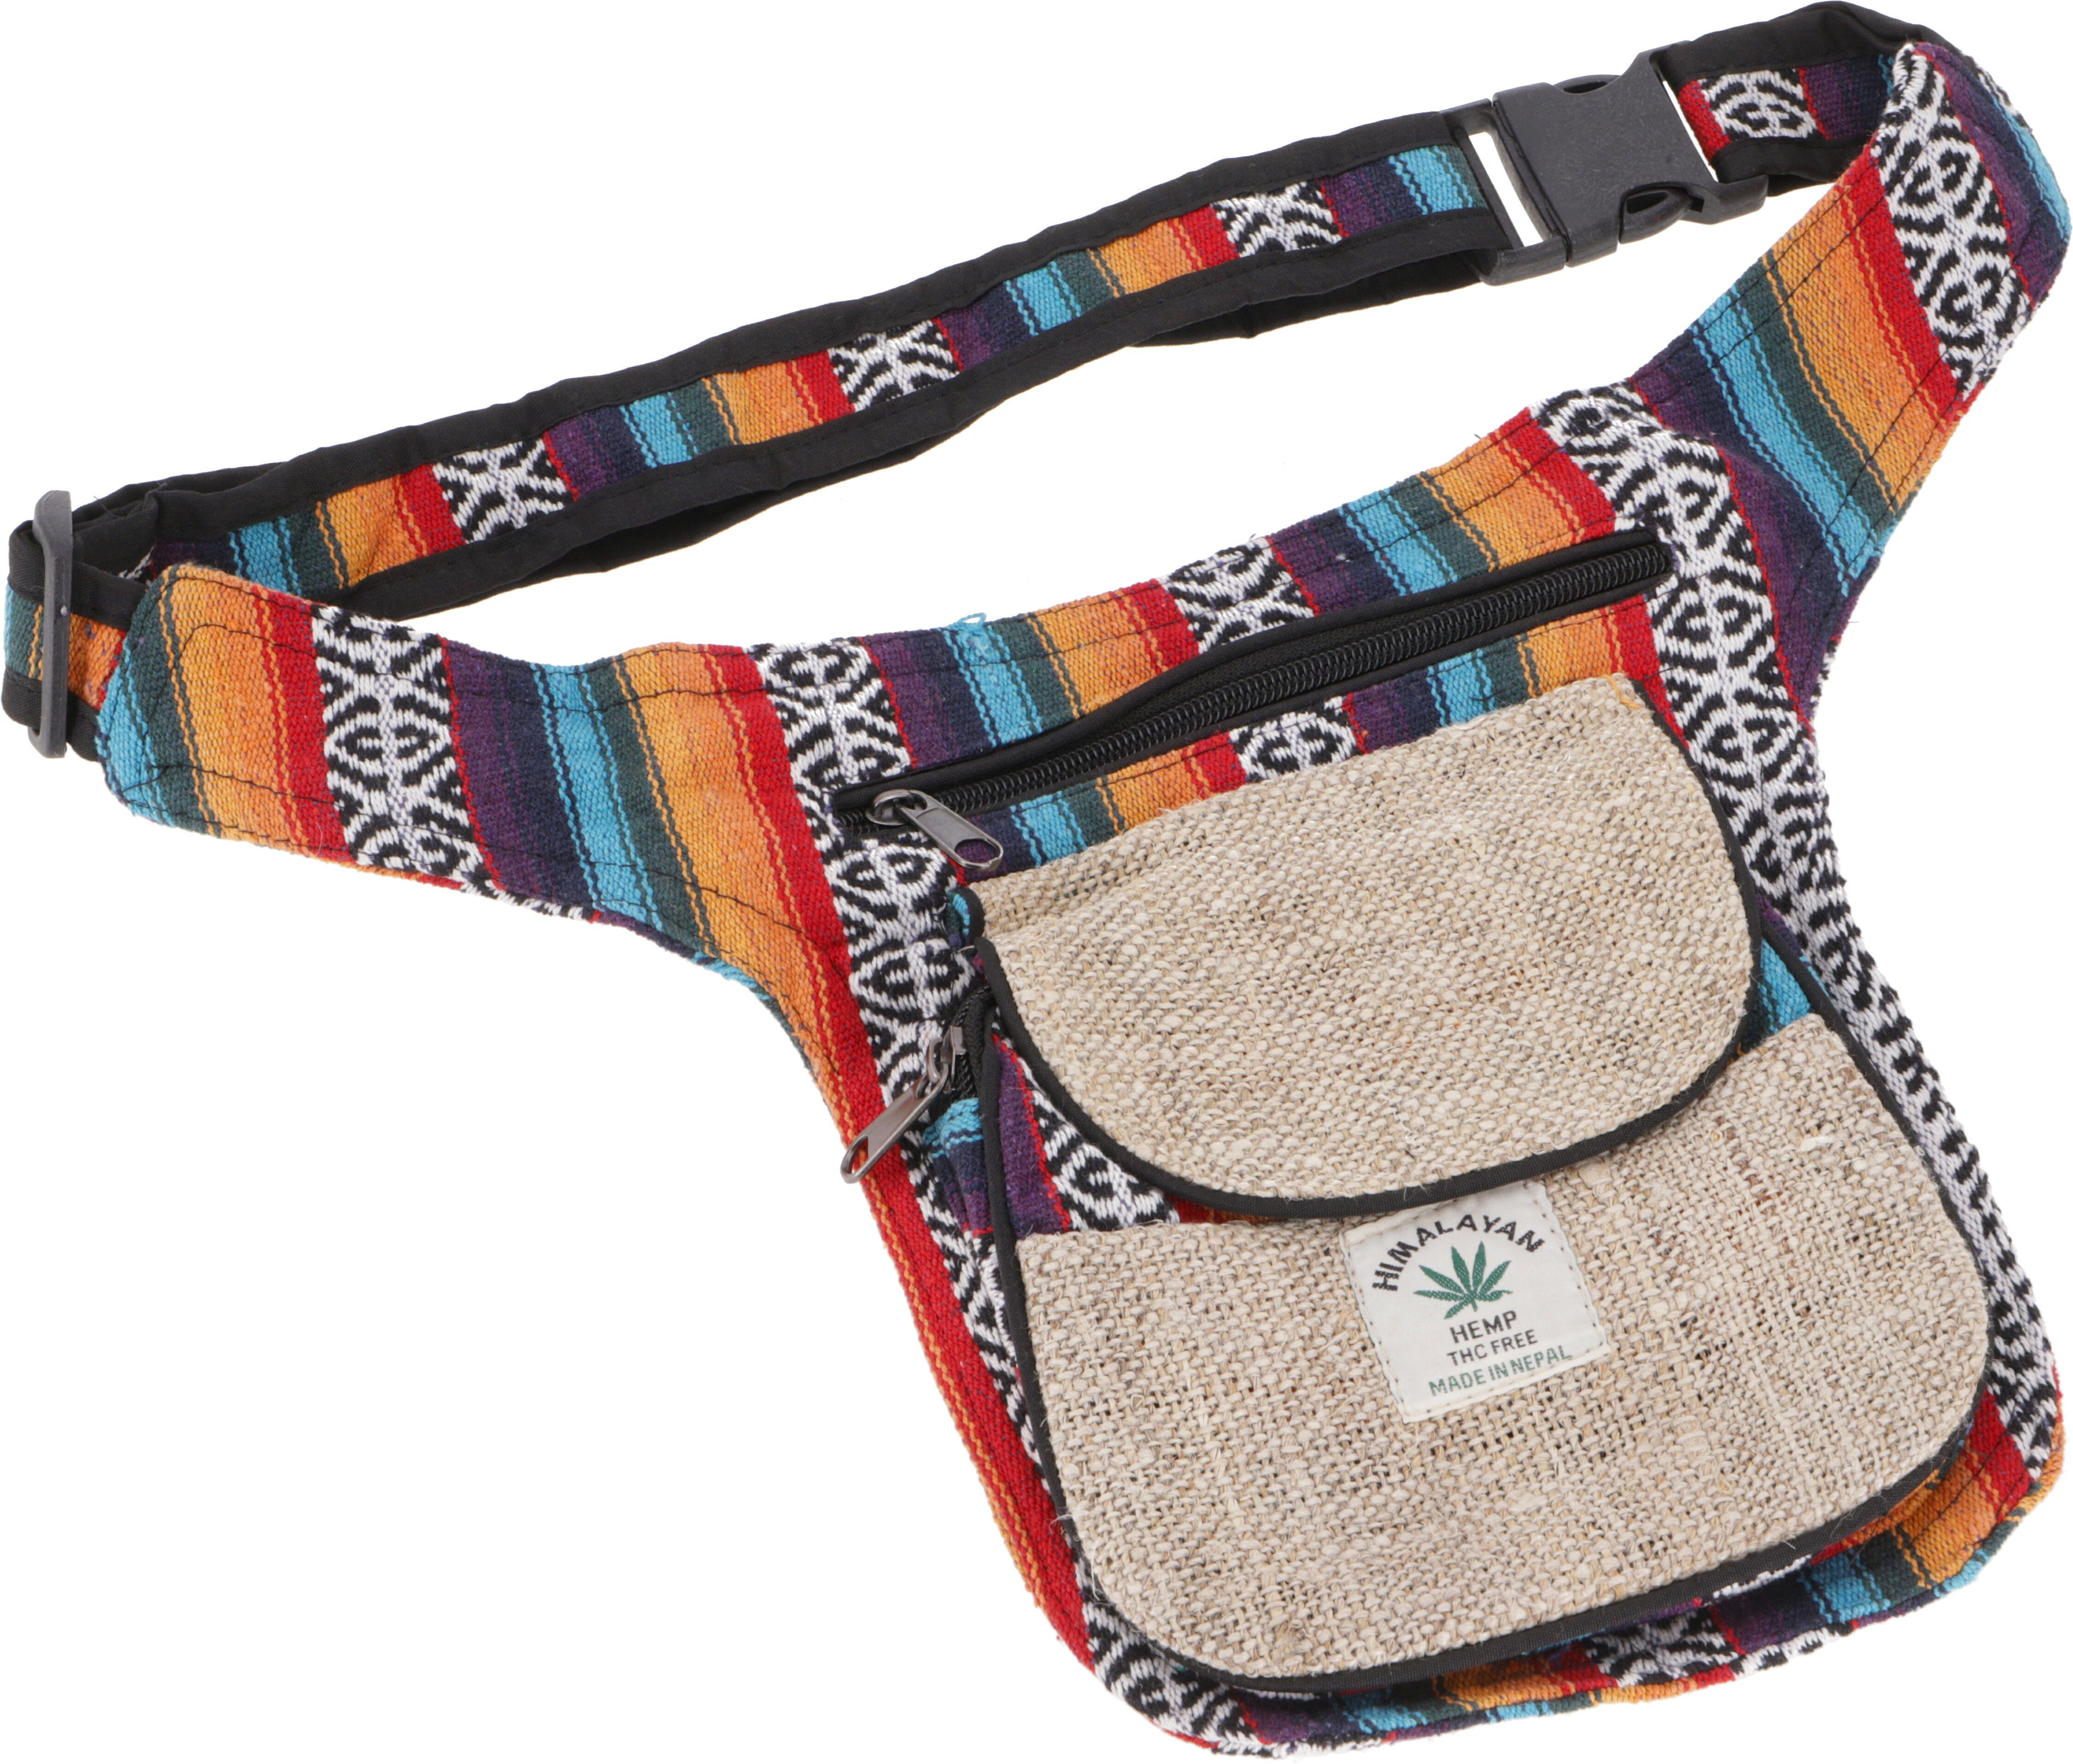 Gürteltasche 2 Sidebag, Guru-Shop Modell - Ethno Gürteltasche Nepal Hanf